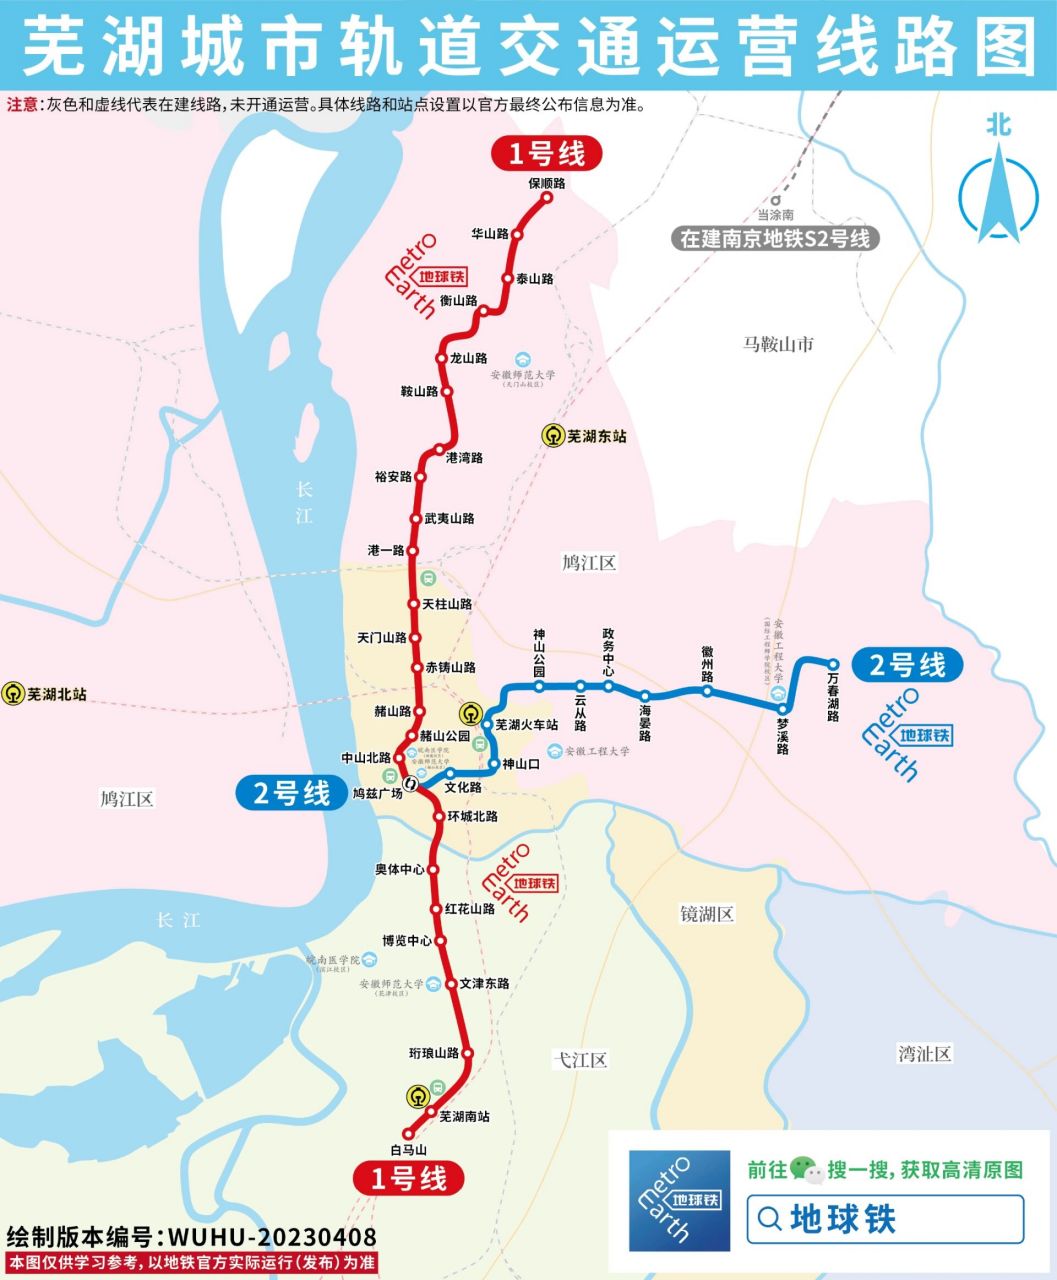 芜湖轨道交通运营线路图,来了!